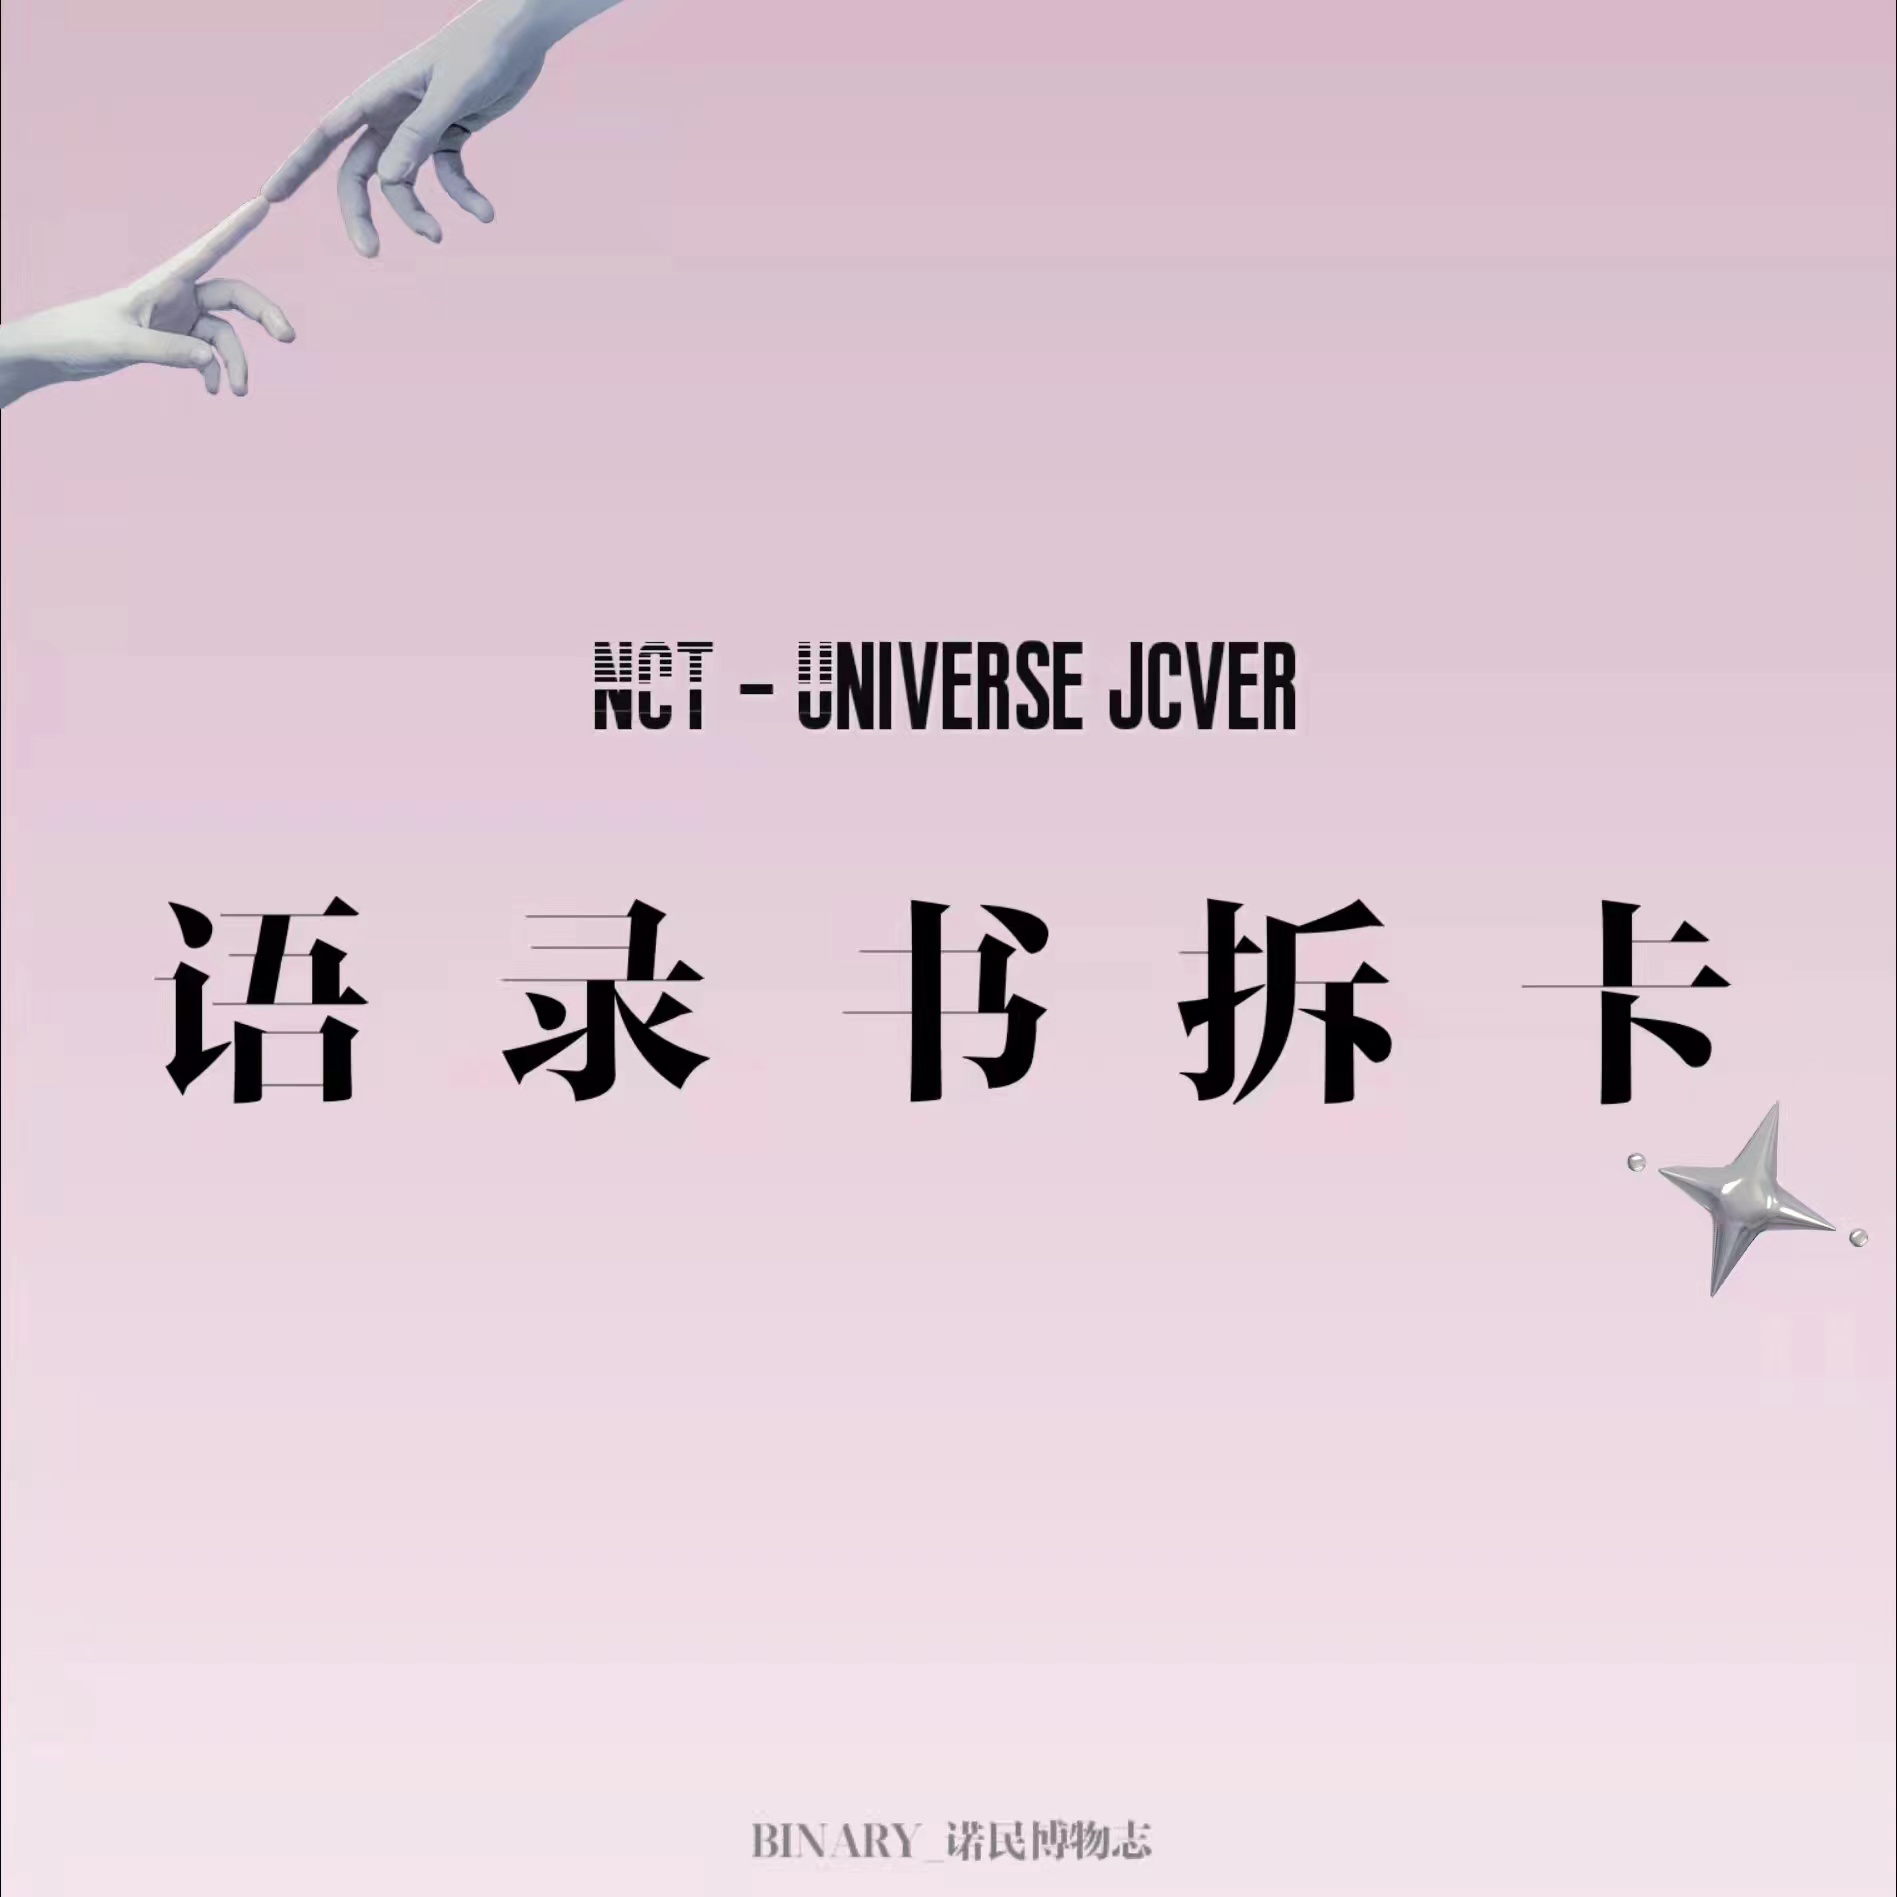 [拆卡专 语录书特典] NCT - 正规3辑 [Universe] (JEWEL CASE Ver.) (帝努 ver.)_Binary_诺民博物志